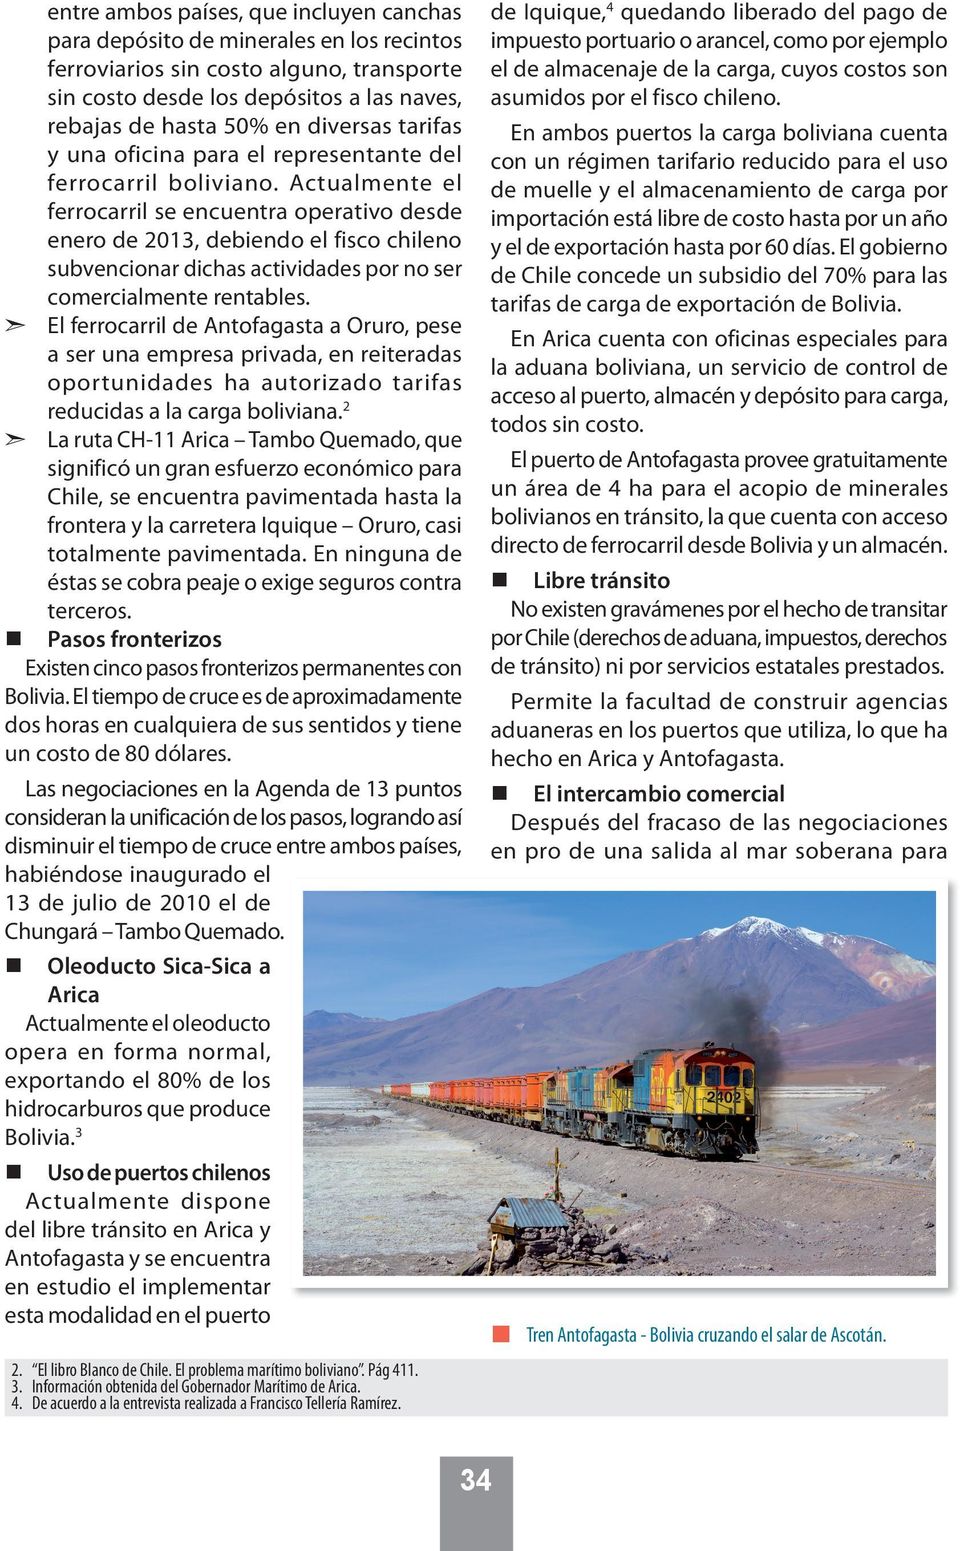 Actualmente el ferrocarril se encuentra operativo desde enero de 2013, debiendo el fisco chileno subvencionar dichas actividades por no ser comercialmente rentables.